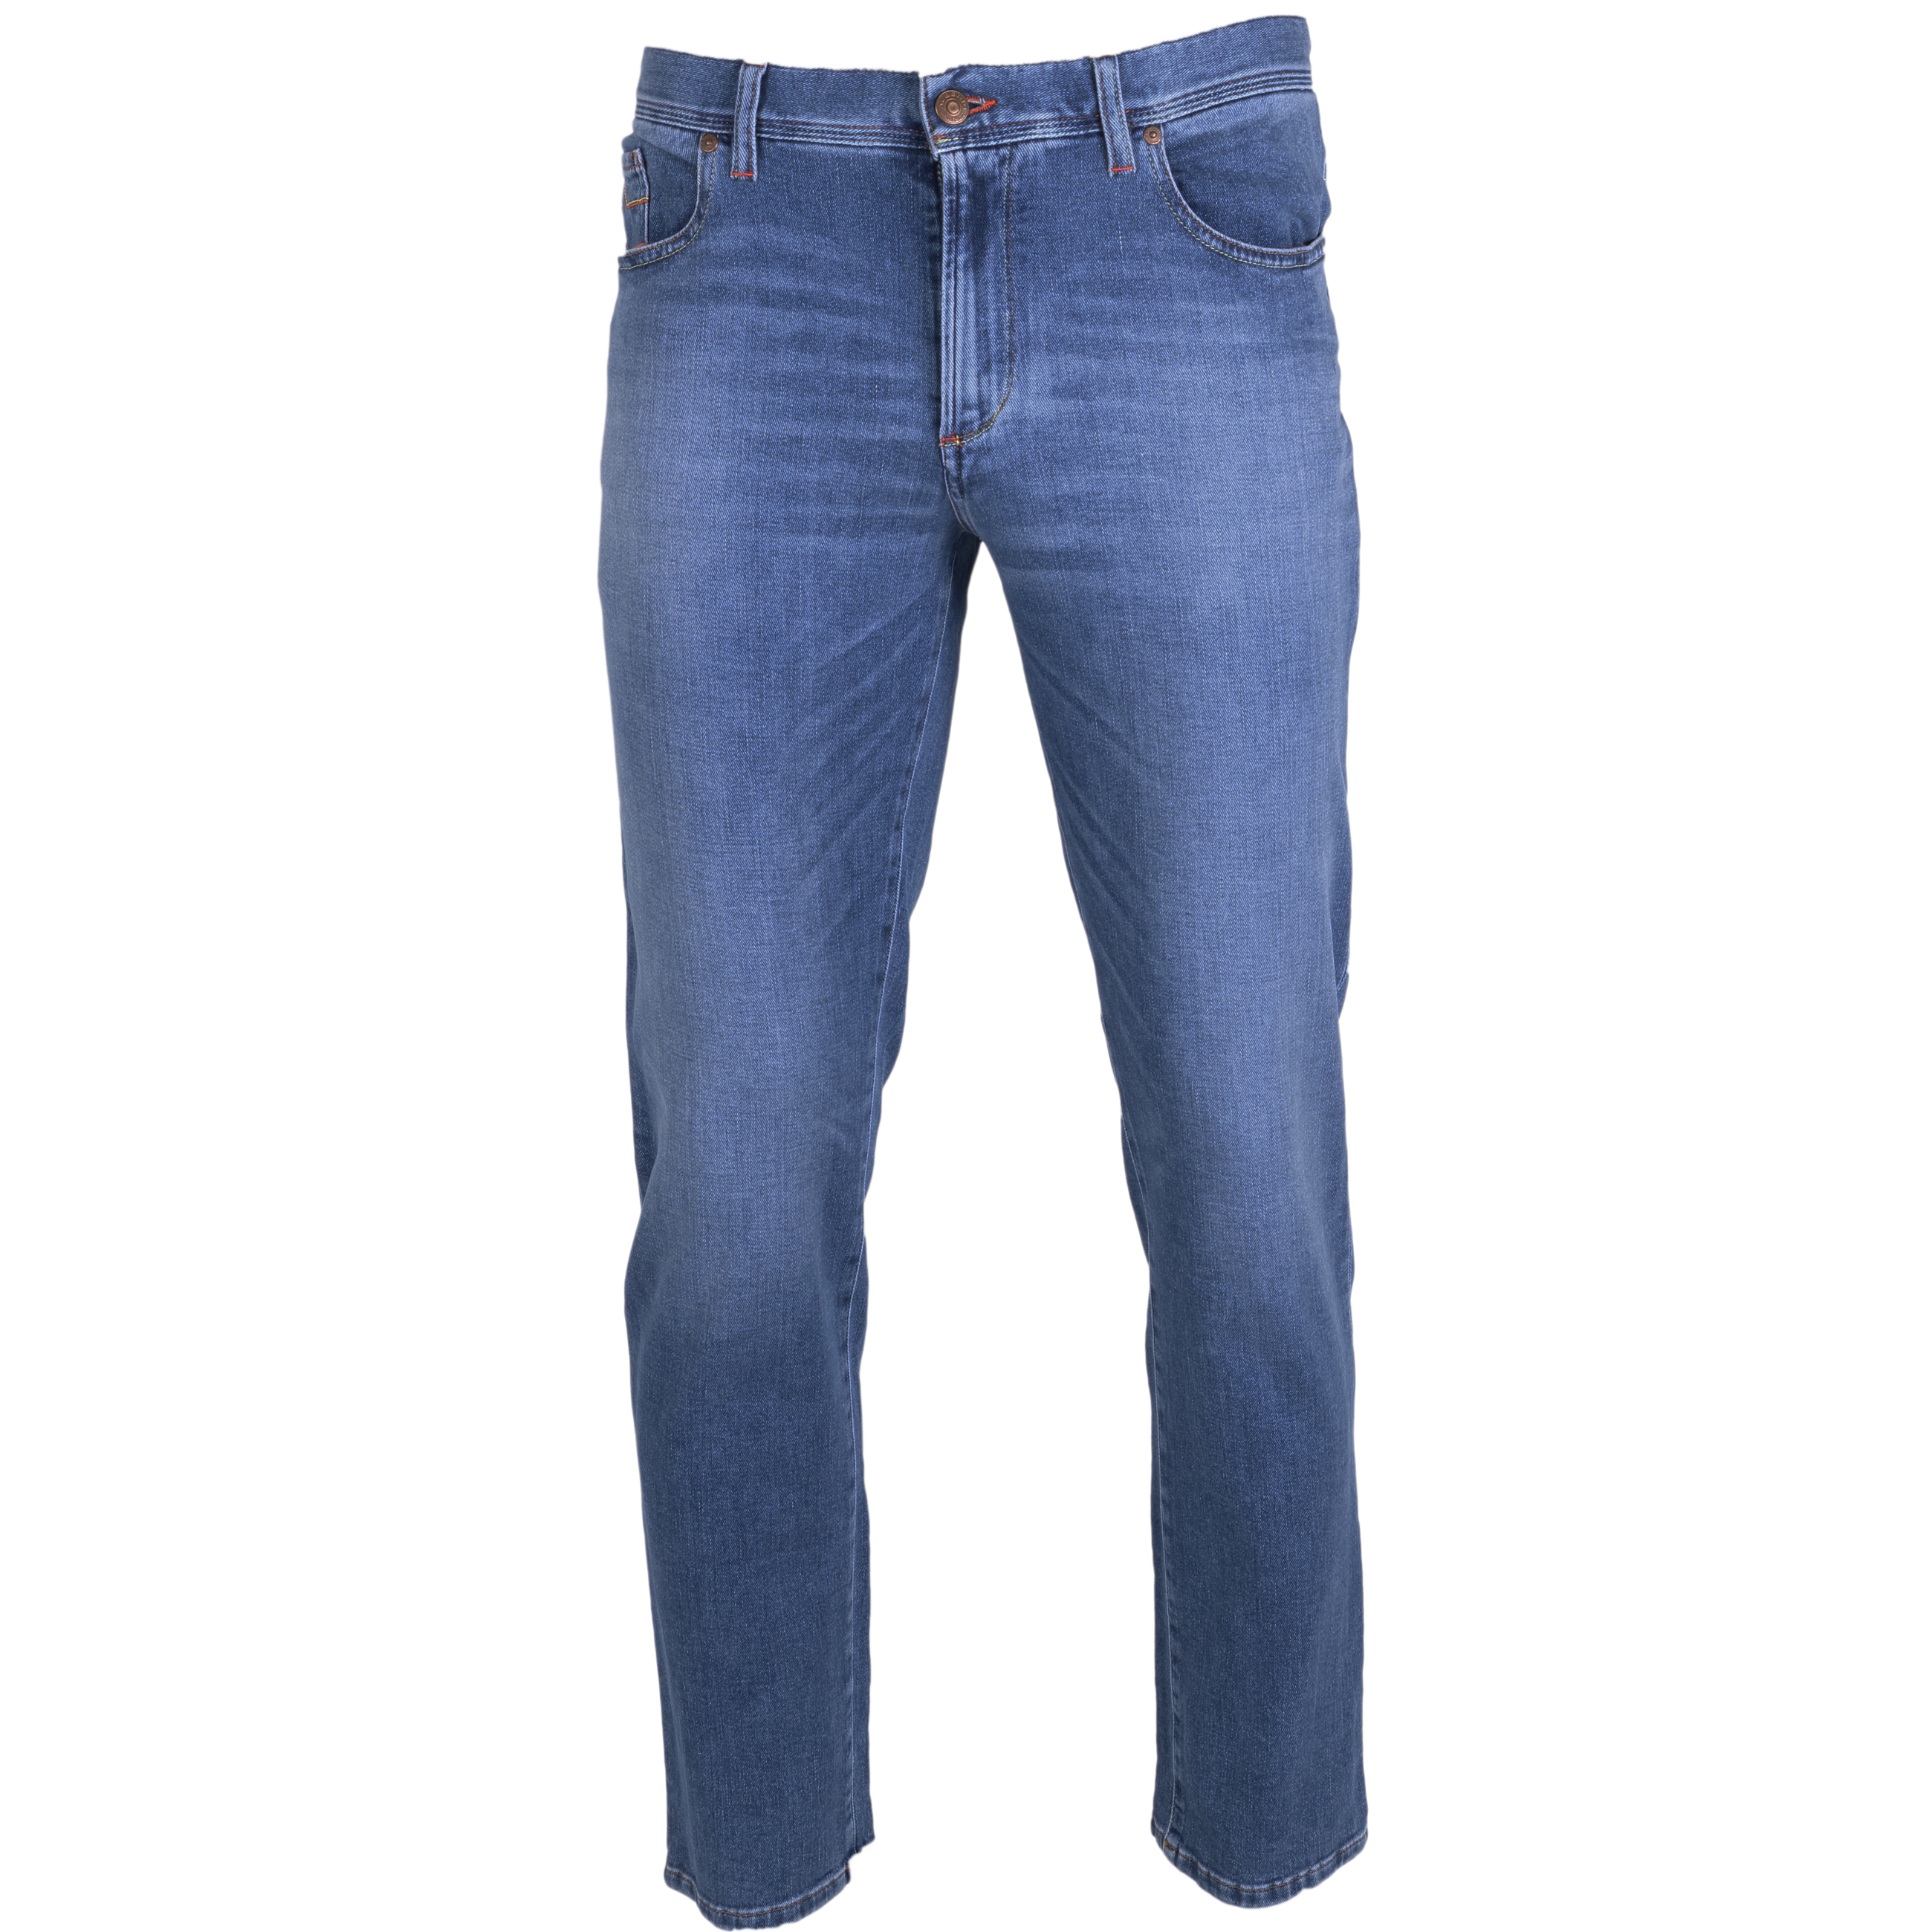 Alberto Jeans Pipe regular fit 30/32 blau